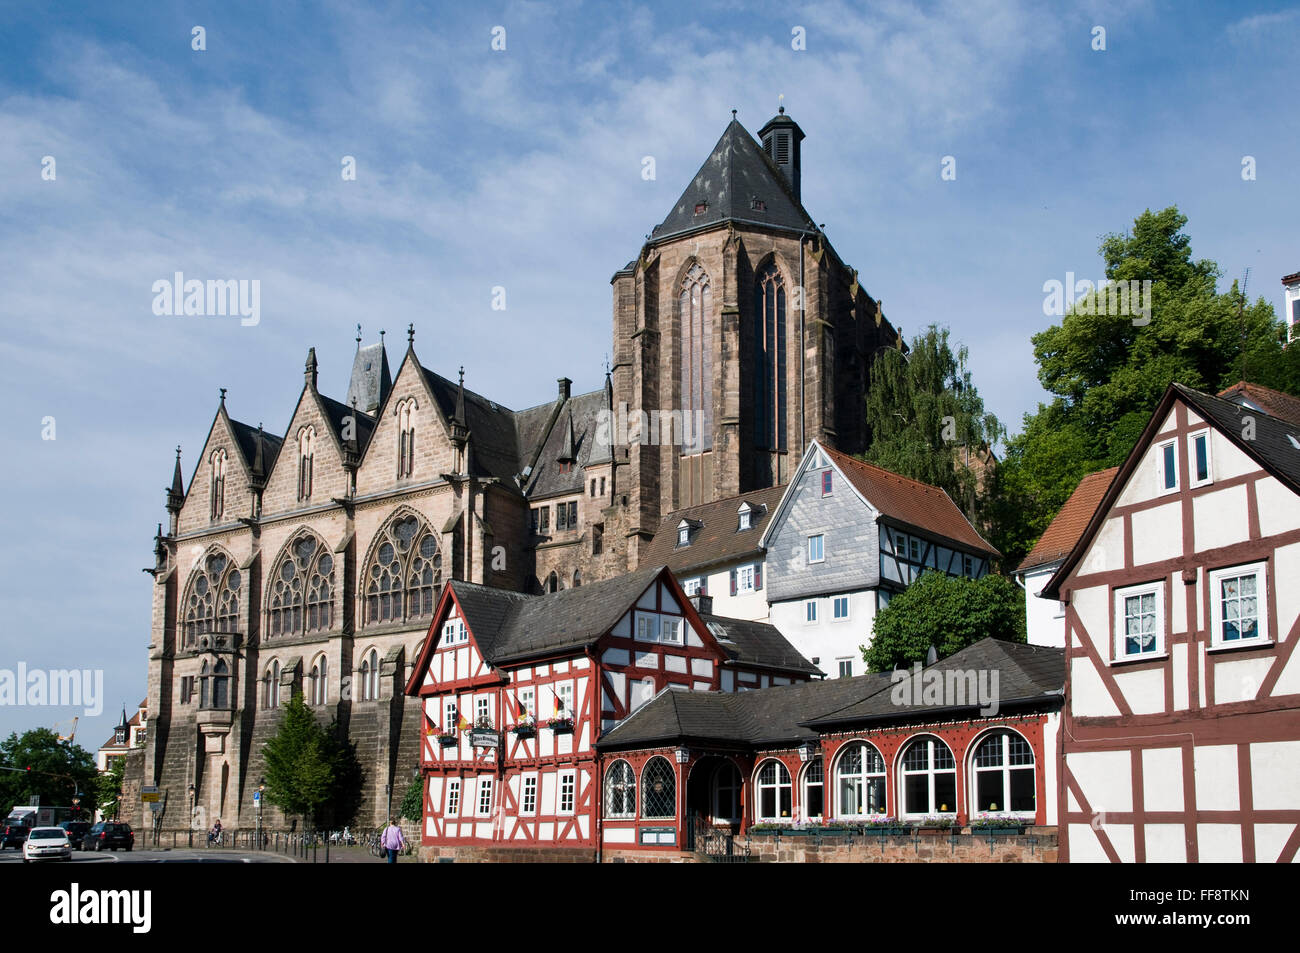 Alte Universität, alter Brauhaus, Altstadt, Marburg, Hessen, Deutschland | Old University, old brew house, old town, Marburg, He Stock Photo